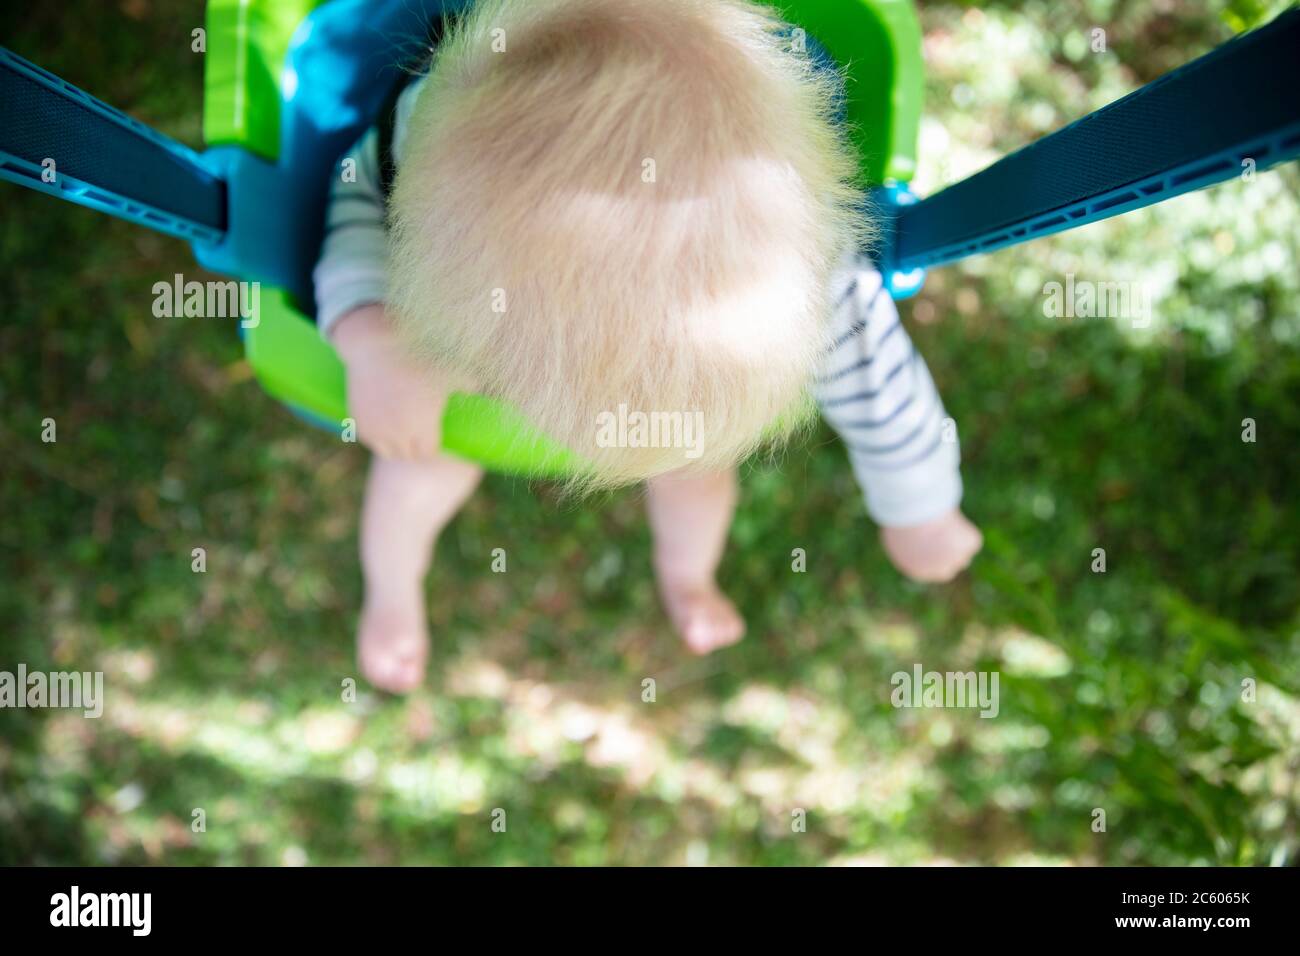 Un petit garçon qui s'amuse à jouer sur une balançoire sous un arbre dans un jardin Banque D'Images